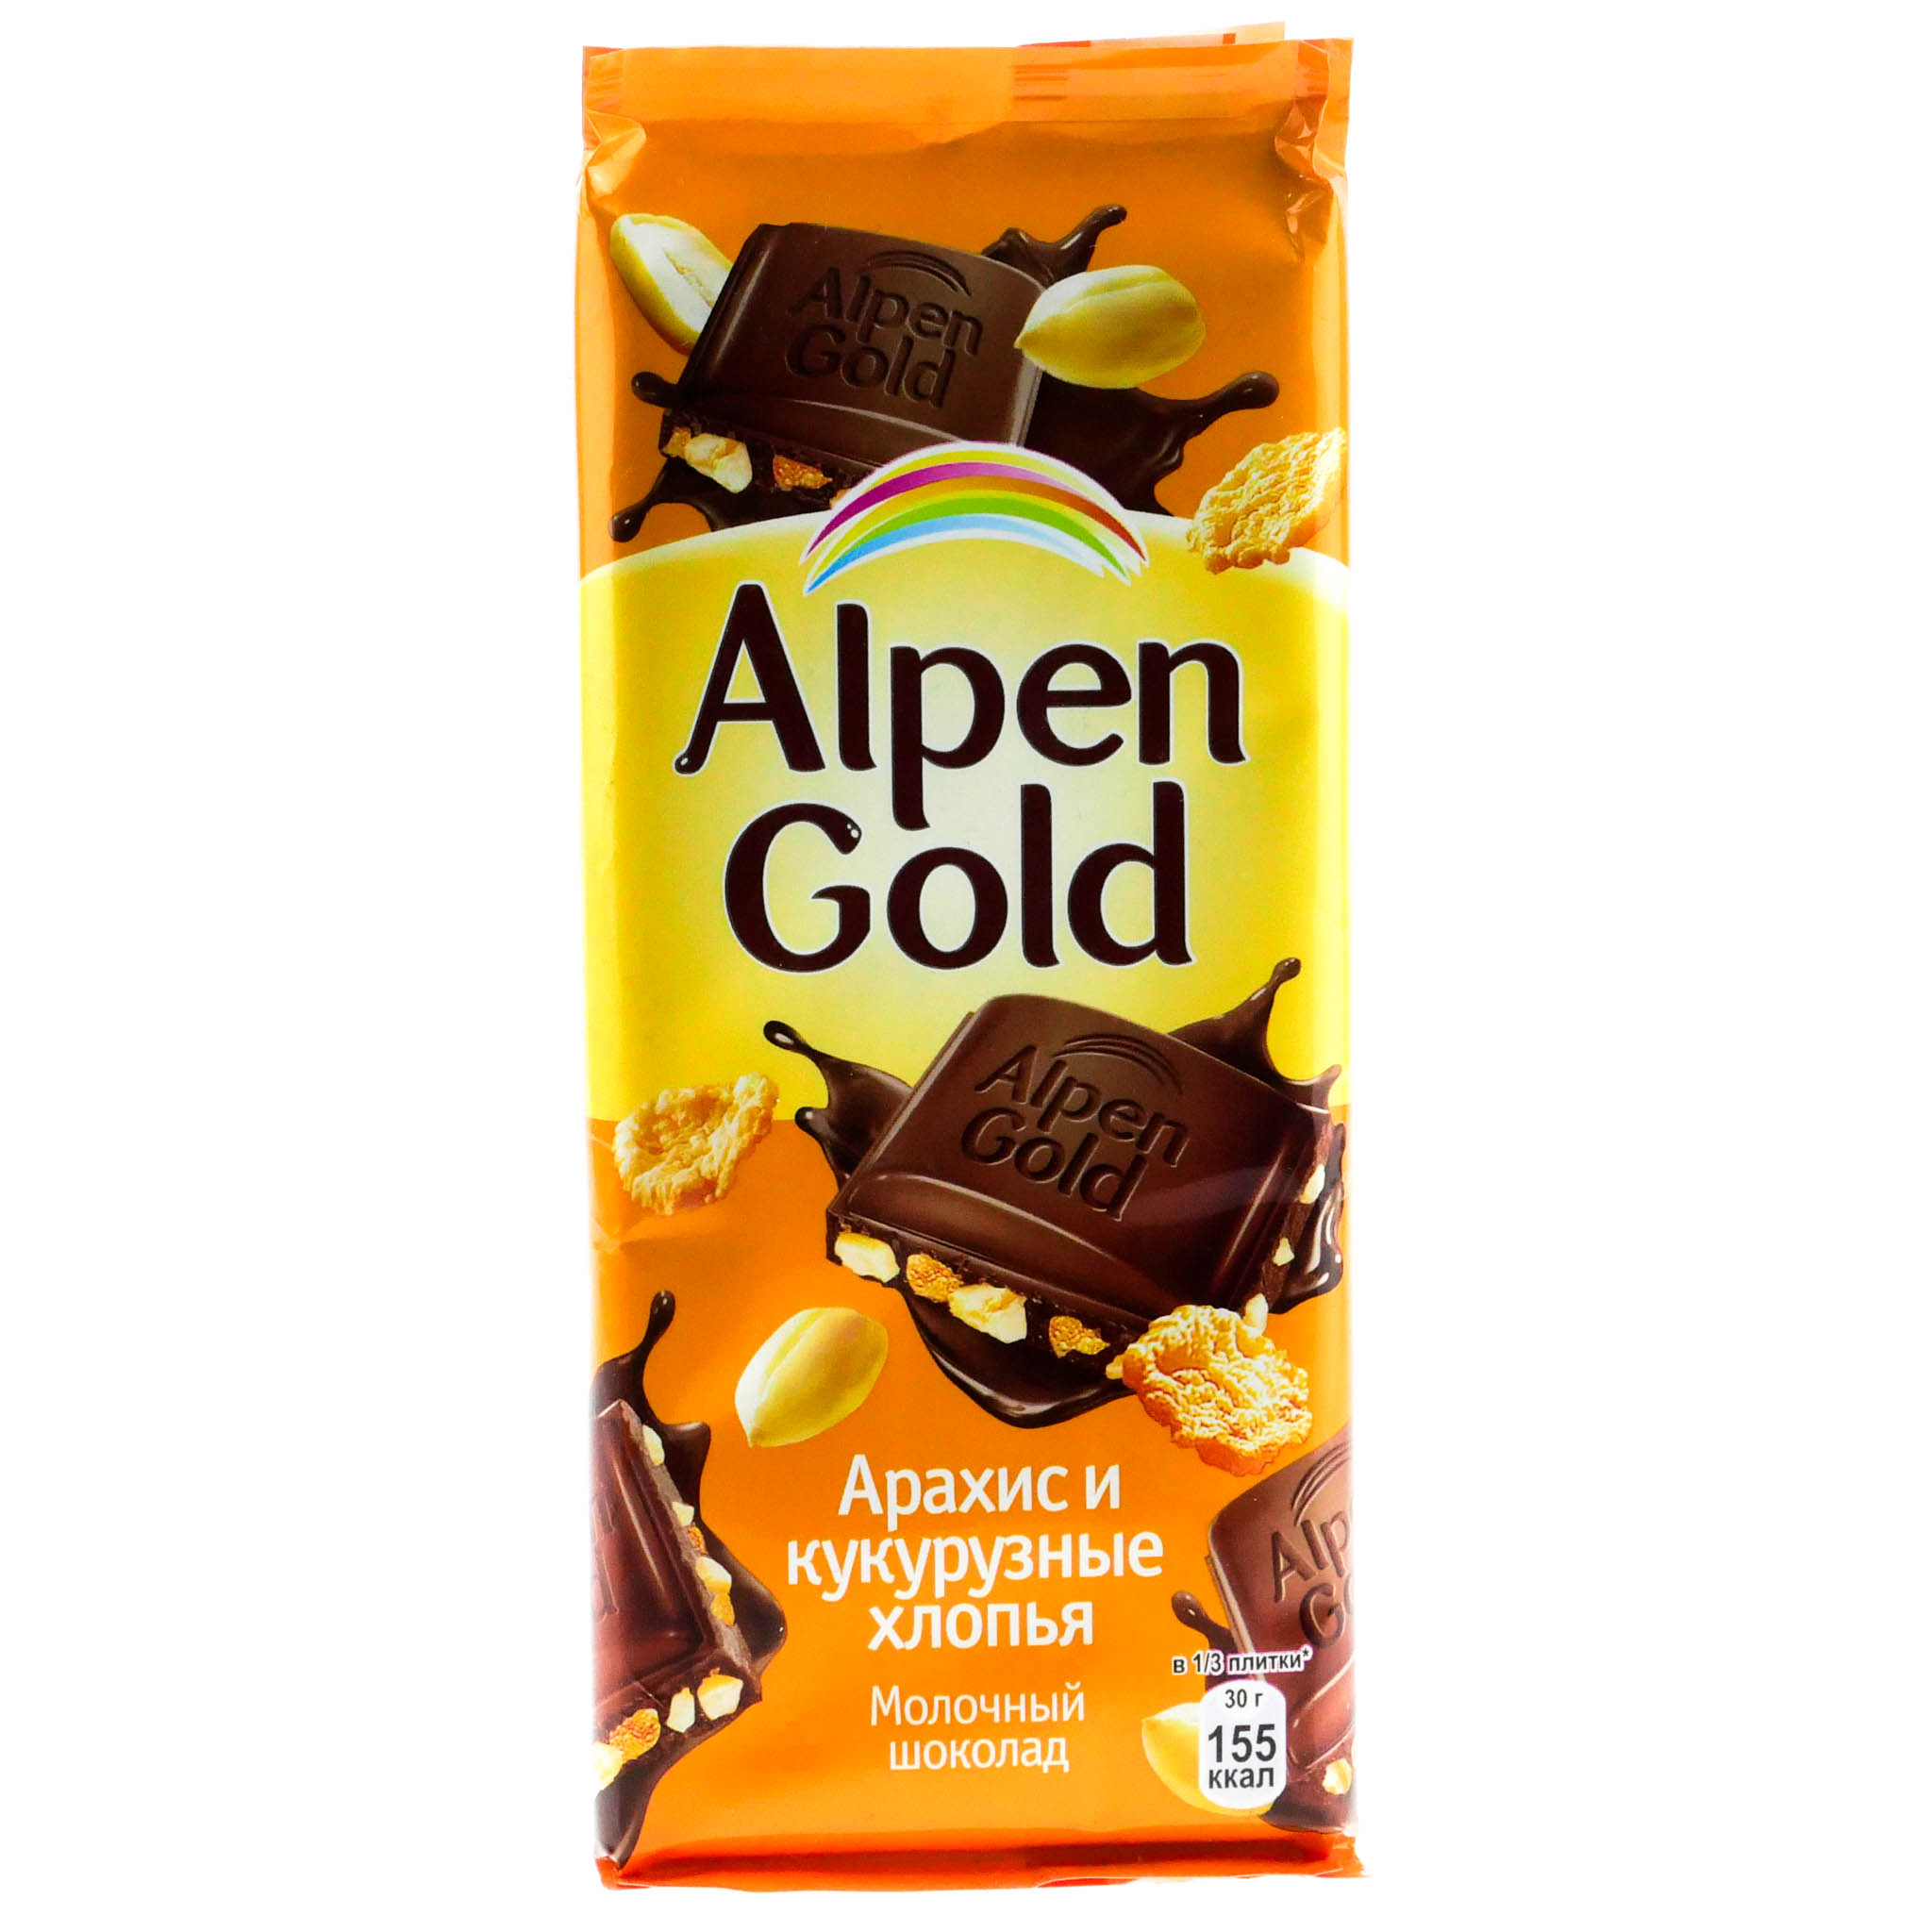 Шоколадка стоит 20 150. Шоколад Альпен Гольд миндаль карамель 90г. Молочный шоколад альпенголдь. Alpen Gold молочный 90г. Шоколад Альпен Гольд молочный шоколад.